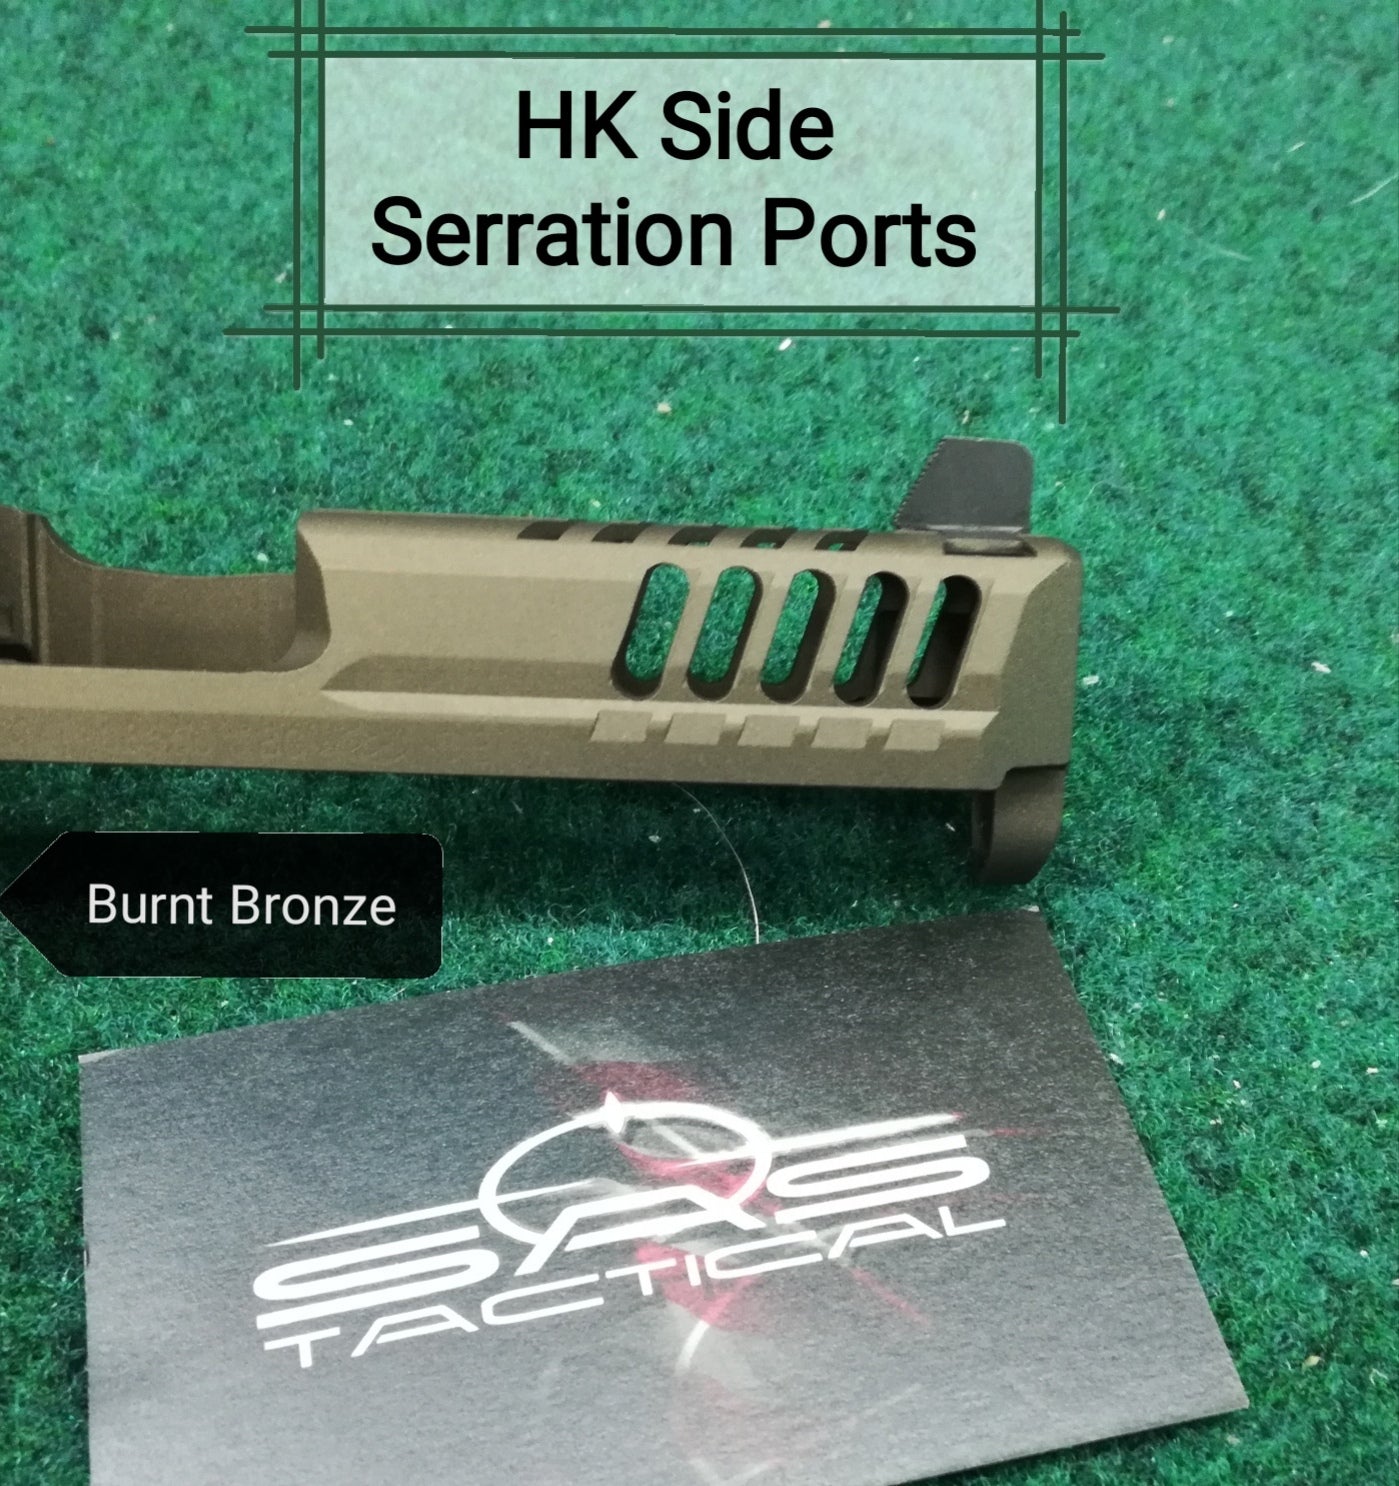 HK VP9/VP40- Slide Milling Service - Side Serration Ports